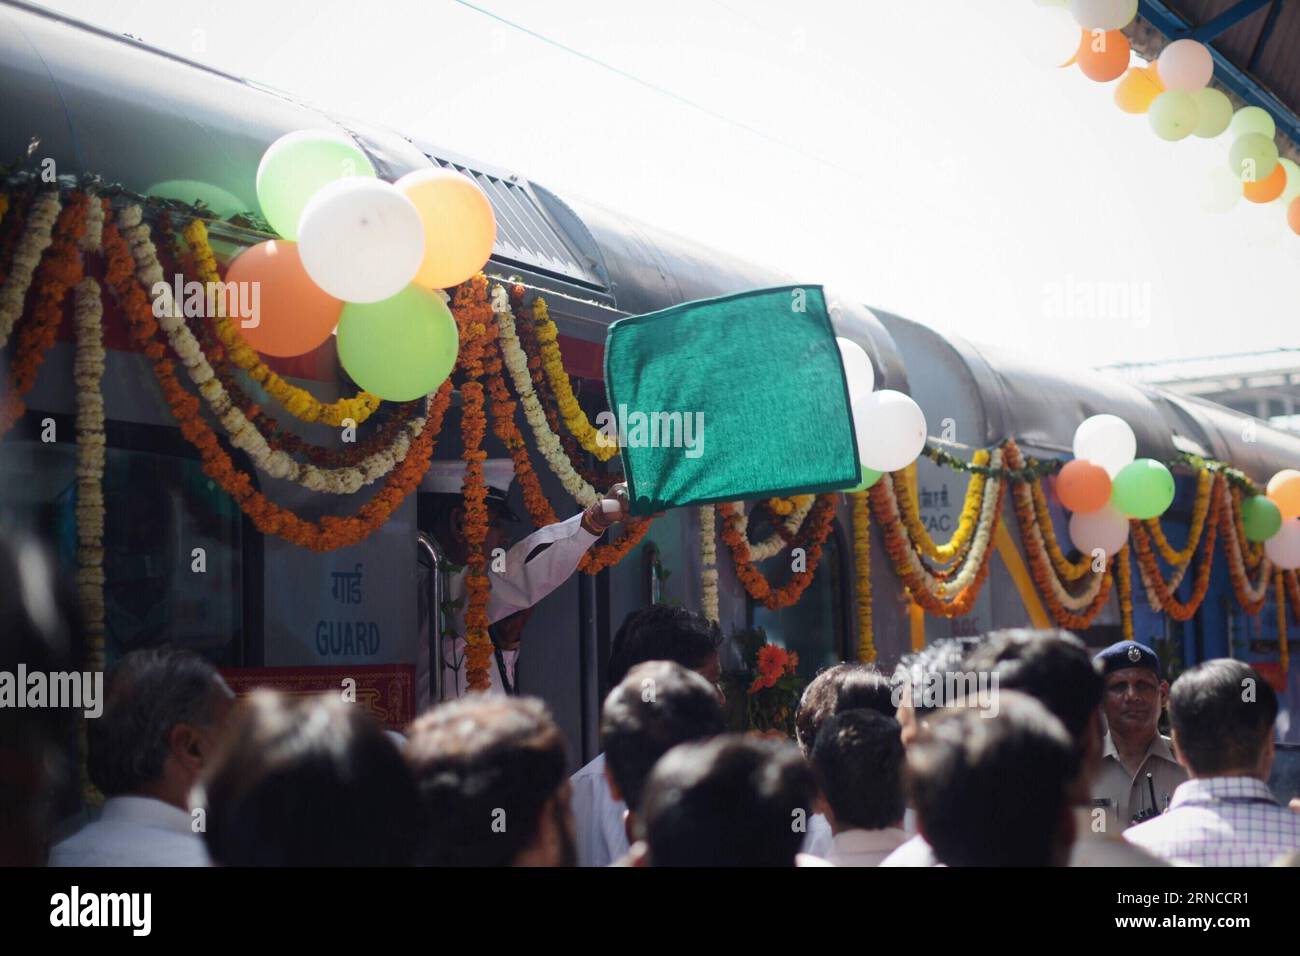 (160405) -- NEU DELHI, 5. April 2016 -- Ein Dirigent schwenkt eine grüne Flagge als Signal für die erste Fahrt des ersten indischen Halbschnellbahnzuges Gatimaan Express am Nizamuddin Bahnhof in Neu-Delhi, der Hauptstadt Indiens, am 5. April 2016. Der erste halbhohe Hochgeschwindigkeitszug des Landes, der die Geschwindigkeit von 160 km/h erreichen sollte, startete am Dienstag von Neu-Delhi nach Agra. Die Reisezeit für die rund 200 km würde laut lokalen Medien auf 110 Minuten verkürzt. ) INDIEN-NEU-DELHI-SEMI-HOCHGESCHWINDIGKEITSZUG-ERSTEINFÜHRUNG BixXiaoyang PUBLICATIONxNOTxINxCHN New Delhi 5. April 2016 A Leitkurven A G Stockfoto